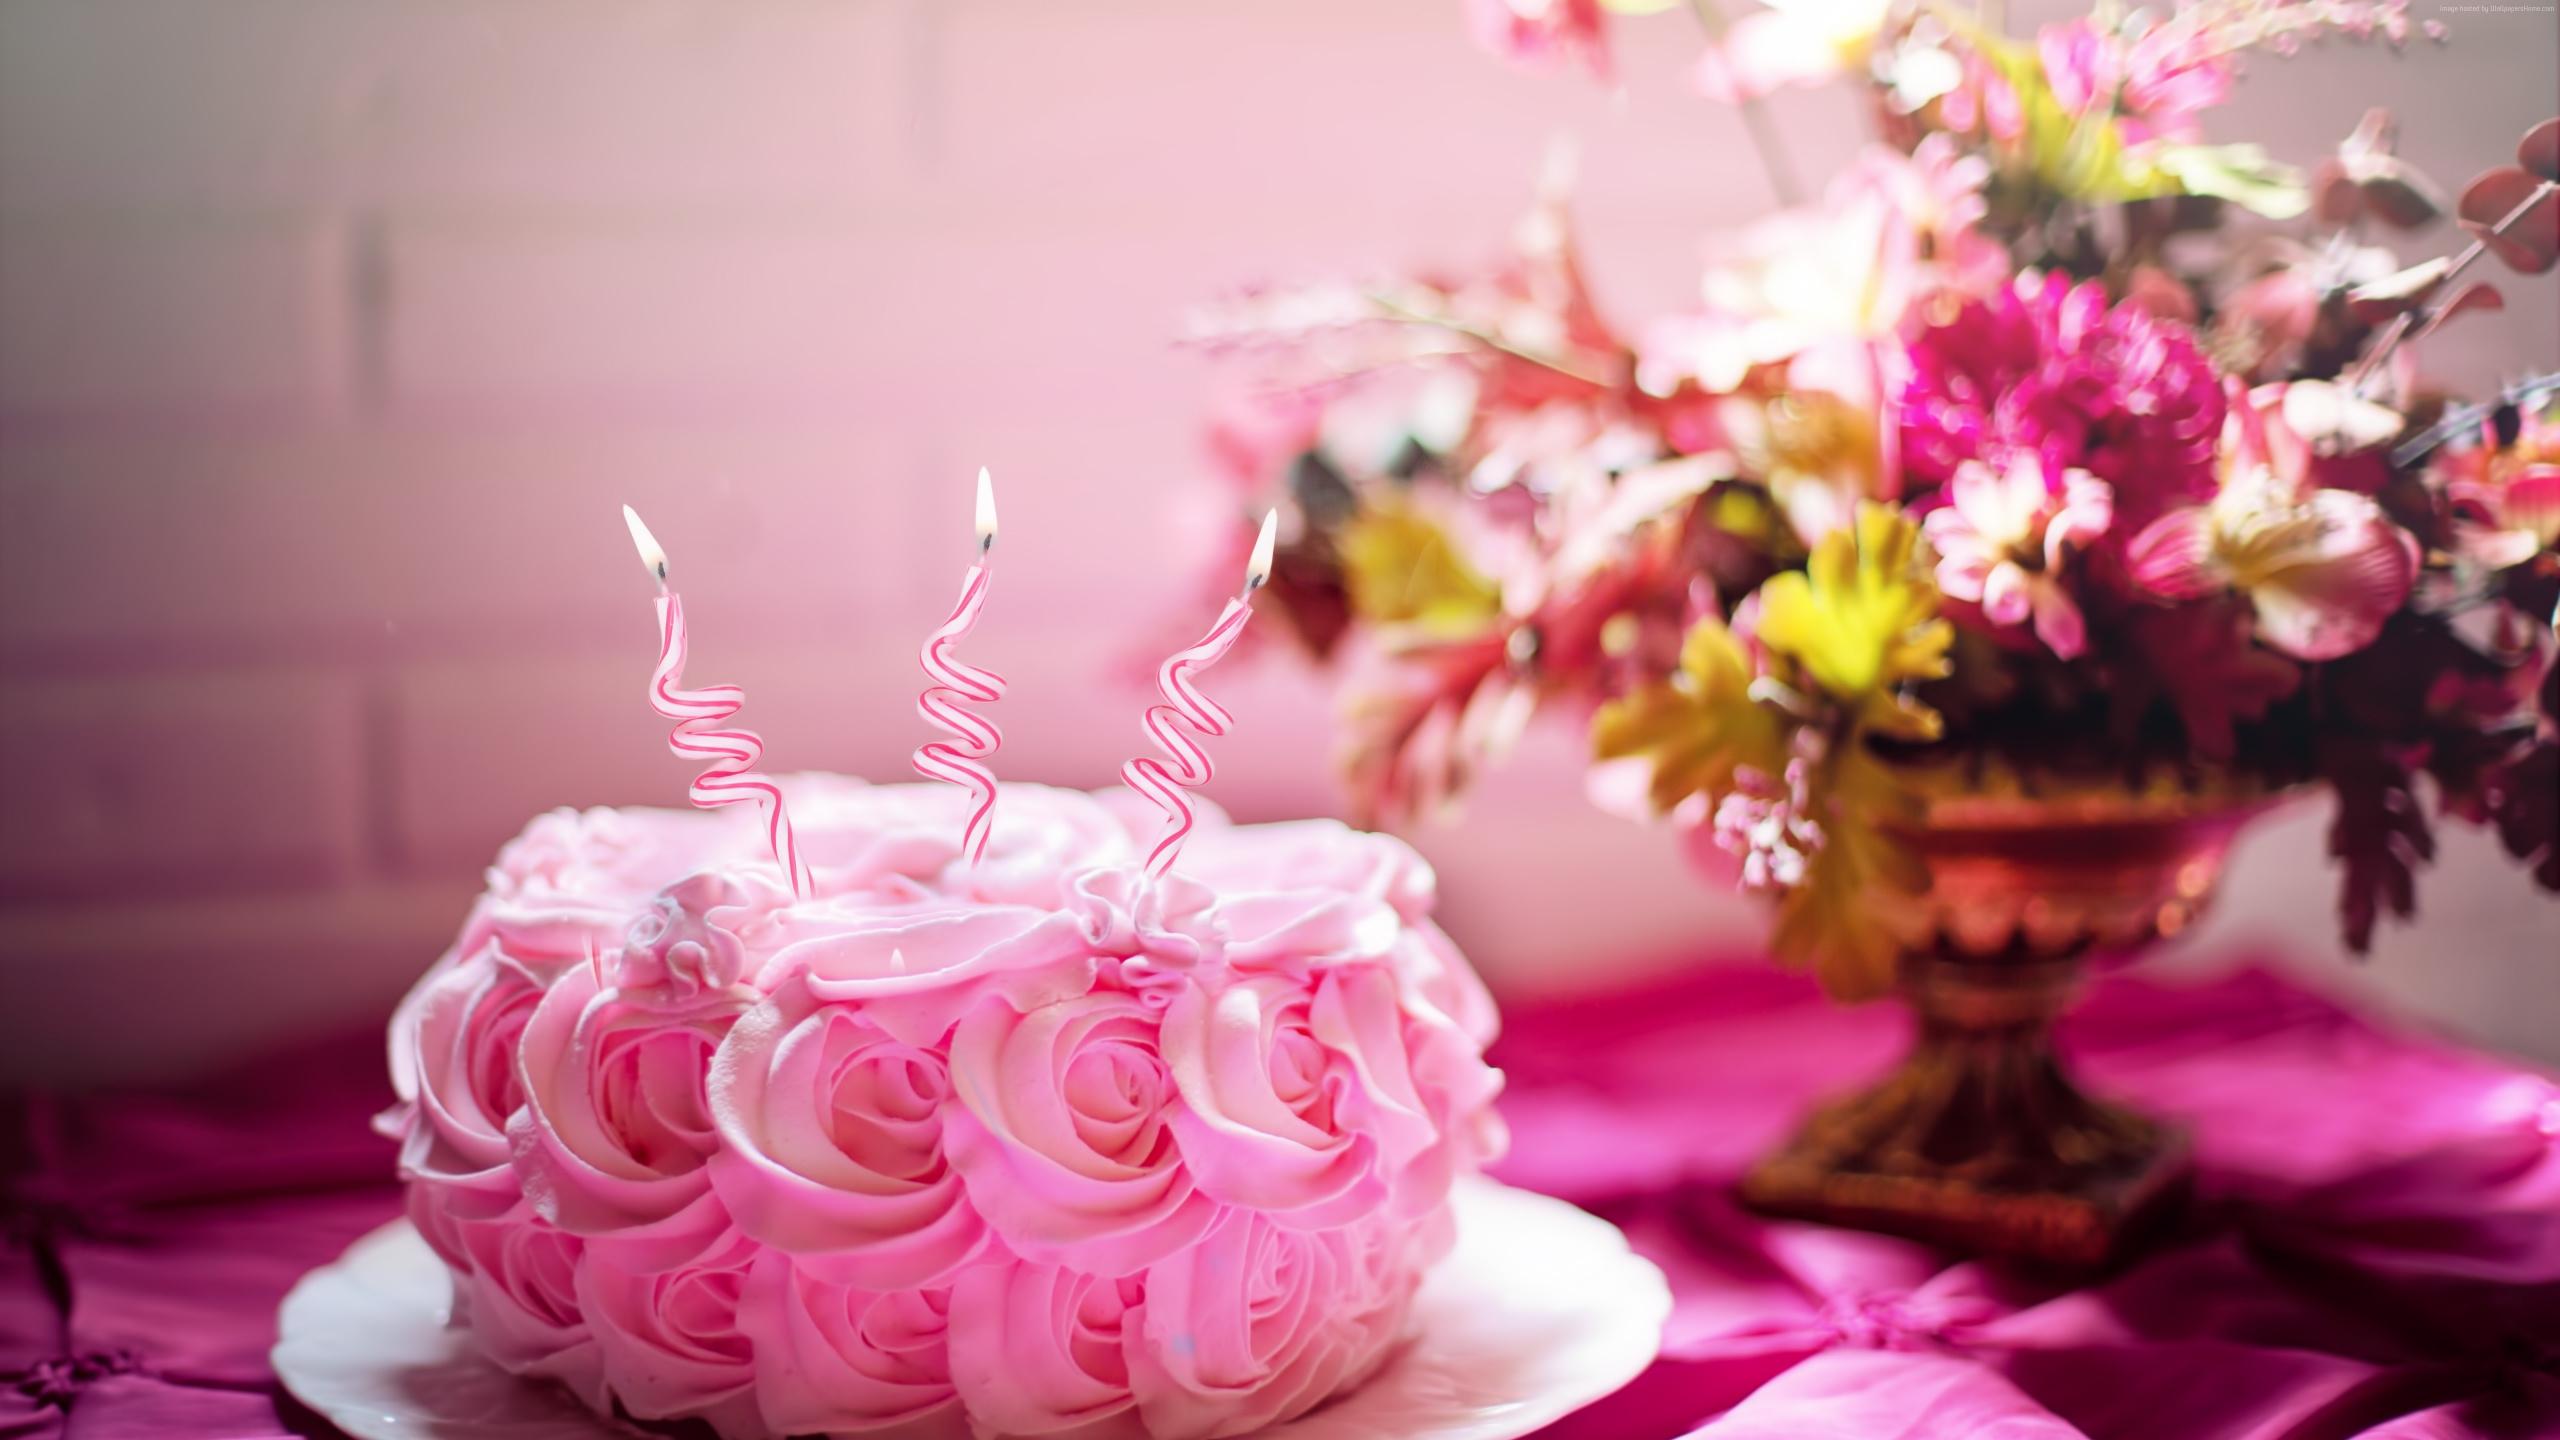 Cerise, Gâteau D'anniversaire, la Décoration de Gâteaux, Pink, Douceur. Wallpaper in 2560x1440 Resolution